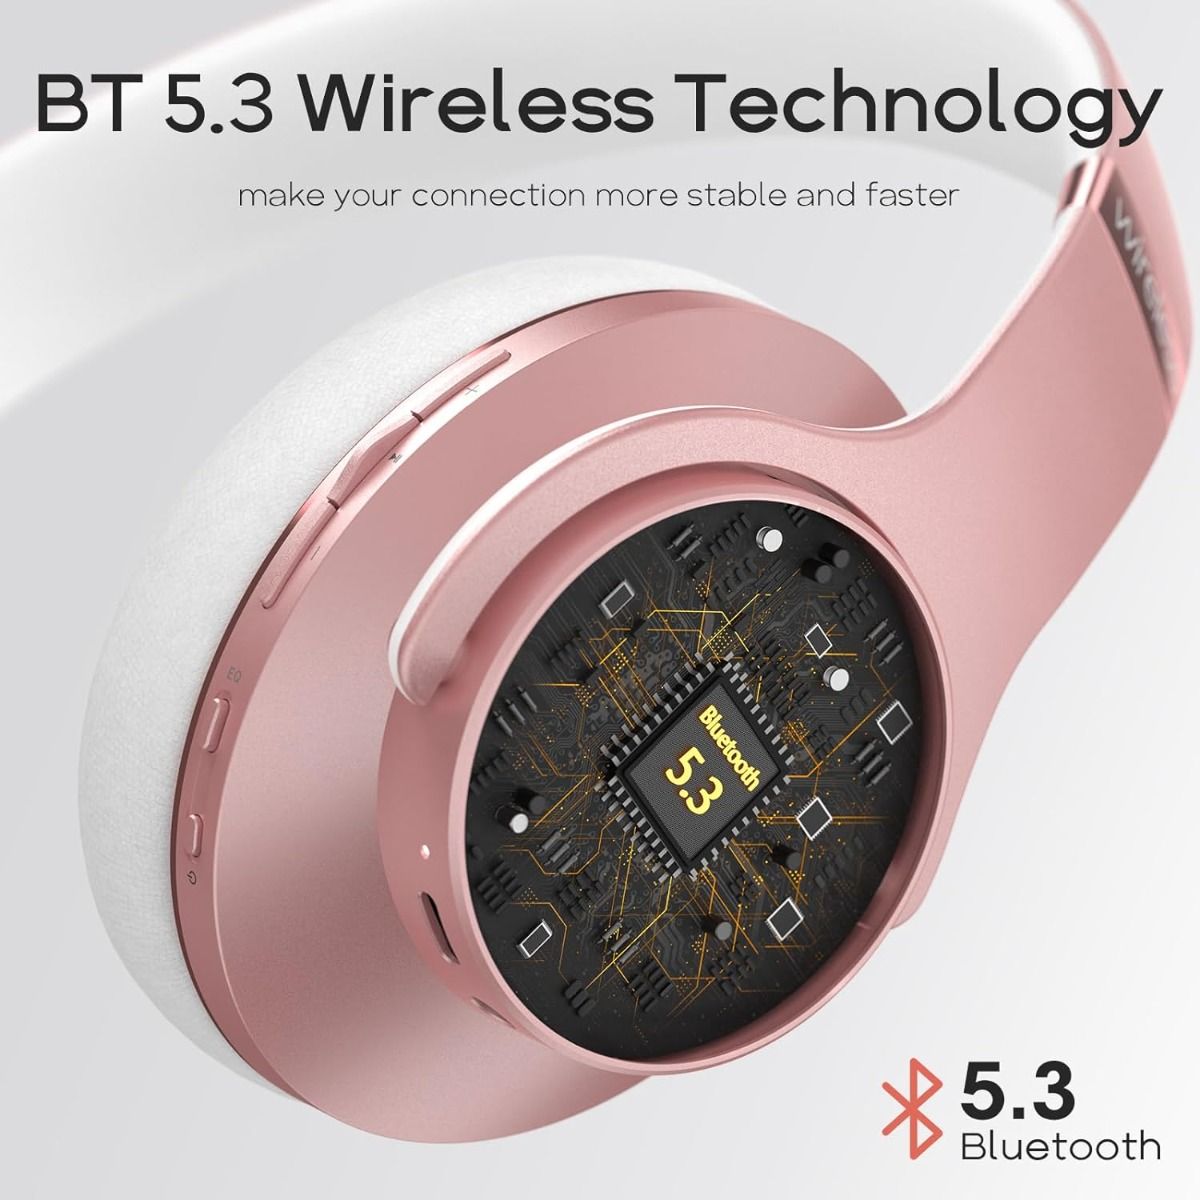 Doqaus Care 1 Słuchawki Nauszne Bluetooth Hifi Różowe Złoto